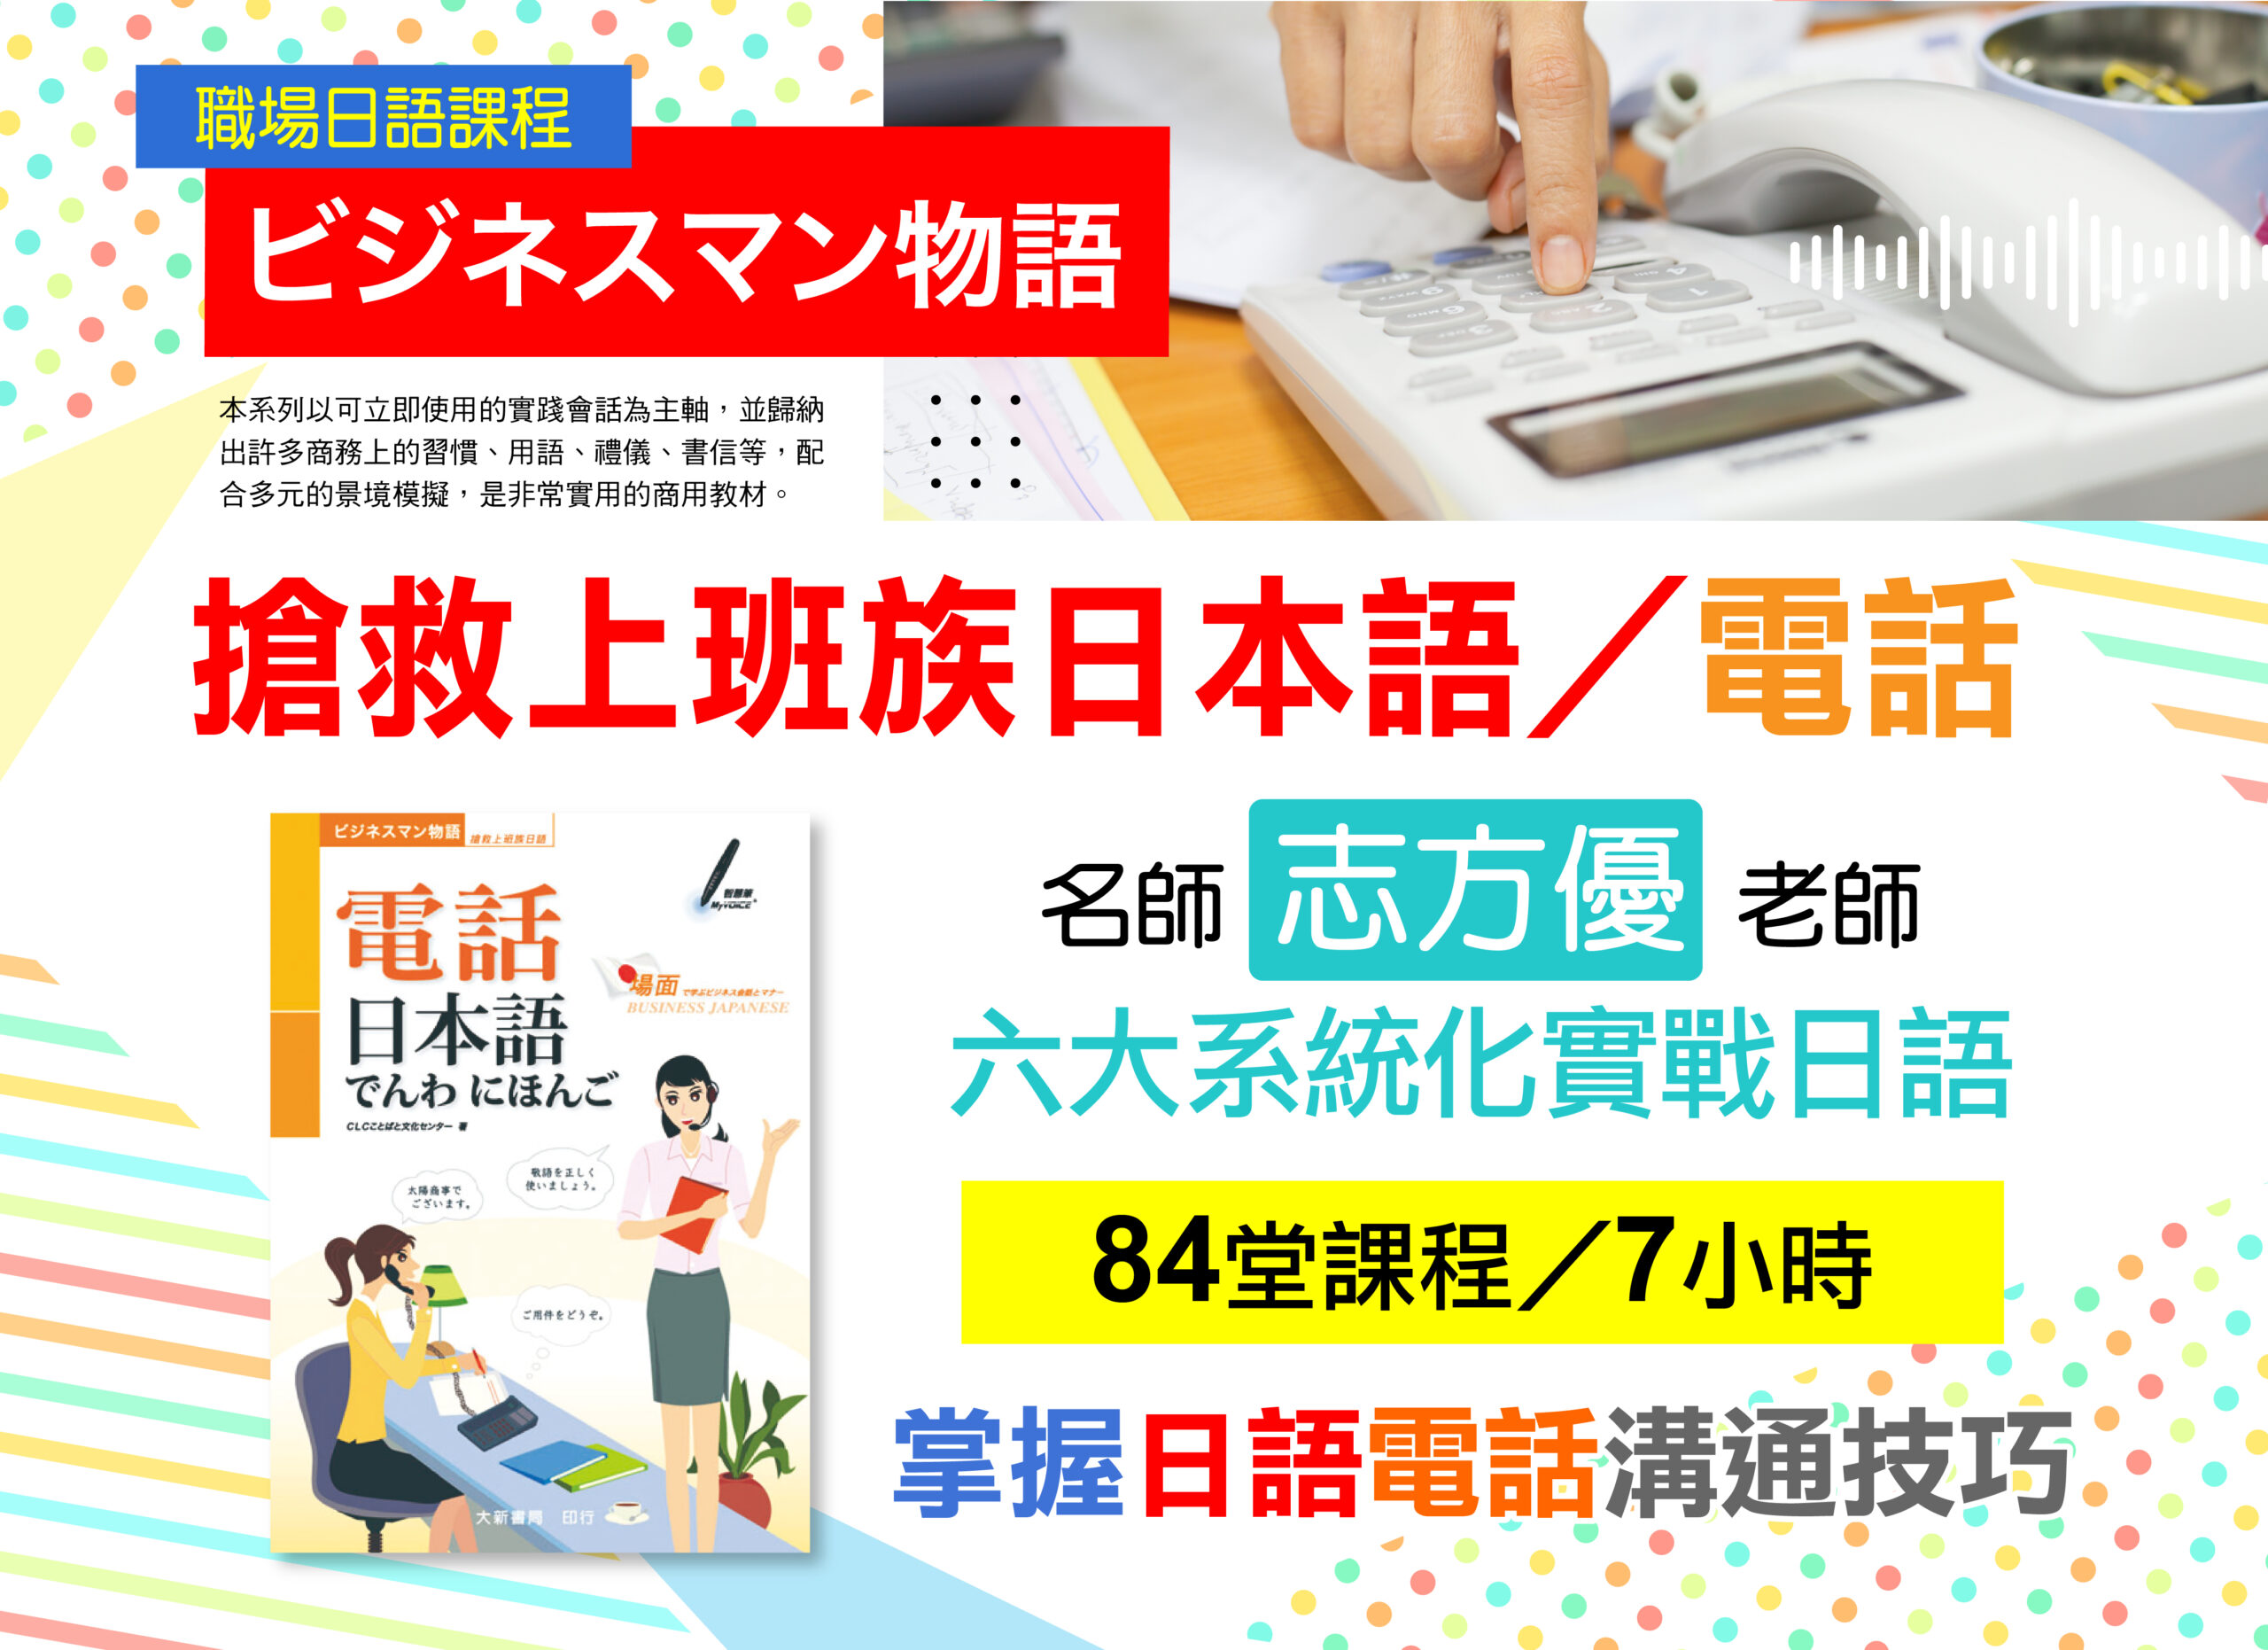 《搶救上班族日本語-電話》-職場日語課程